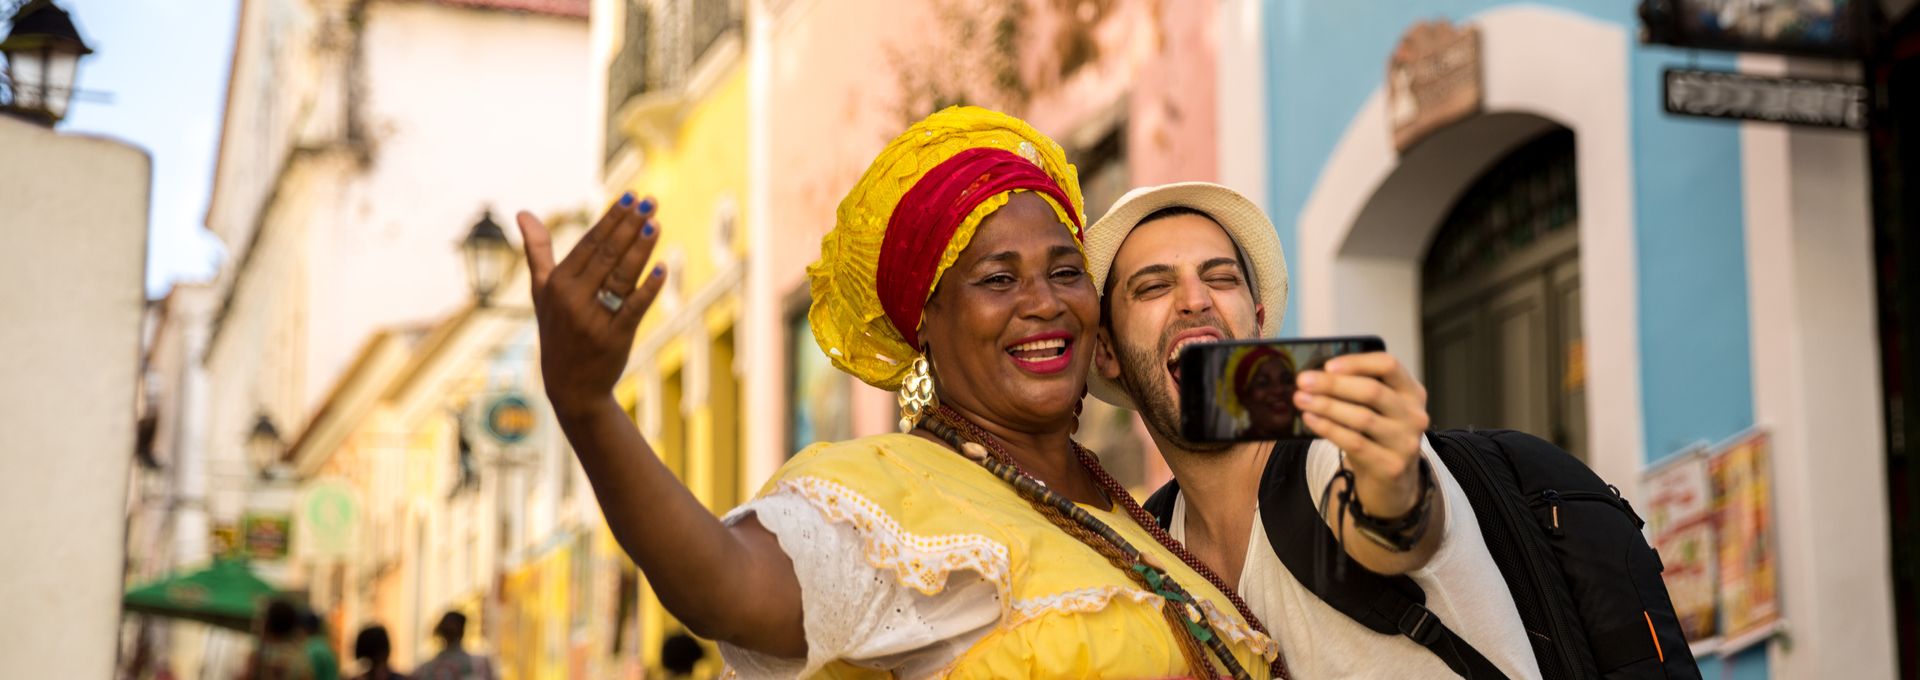 Hombre joven se toma una fotografía con una mujer originaria de Panamá